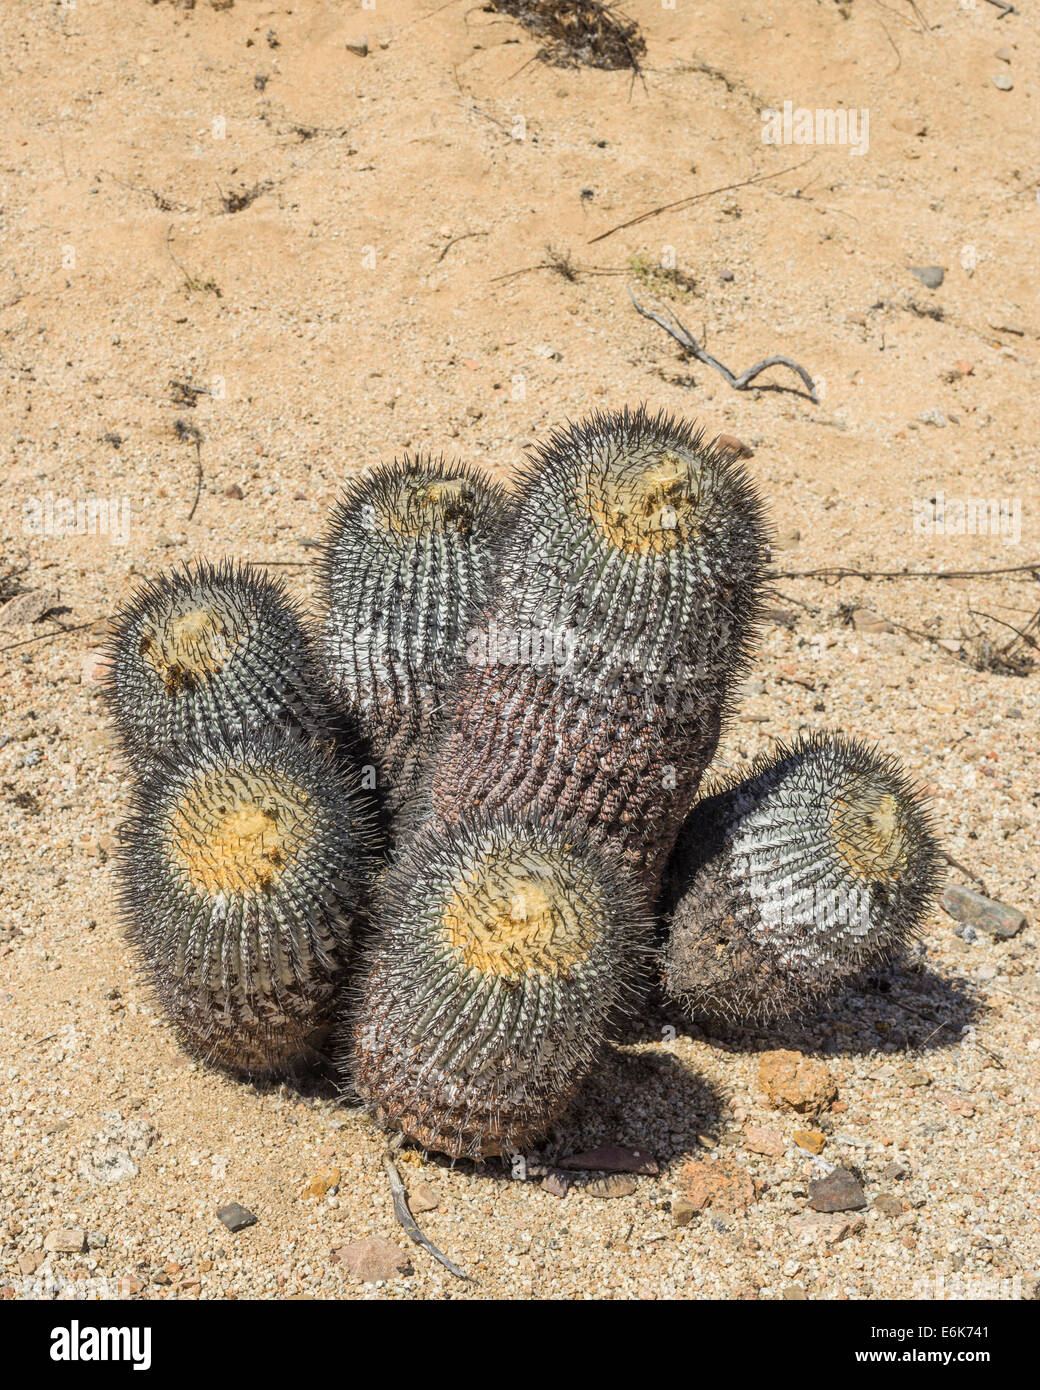 Copiapoa Cactus (Copiapoa columna-albain) growing in a barren landscape, Pan de Azúcar National Park, Atacama Region, Chile Stock Photo